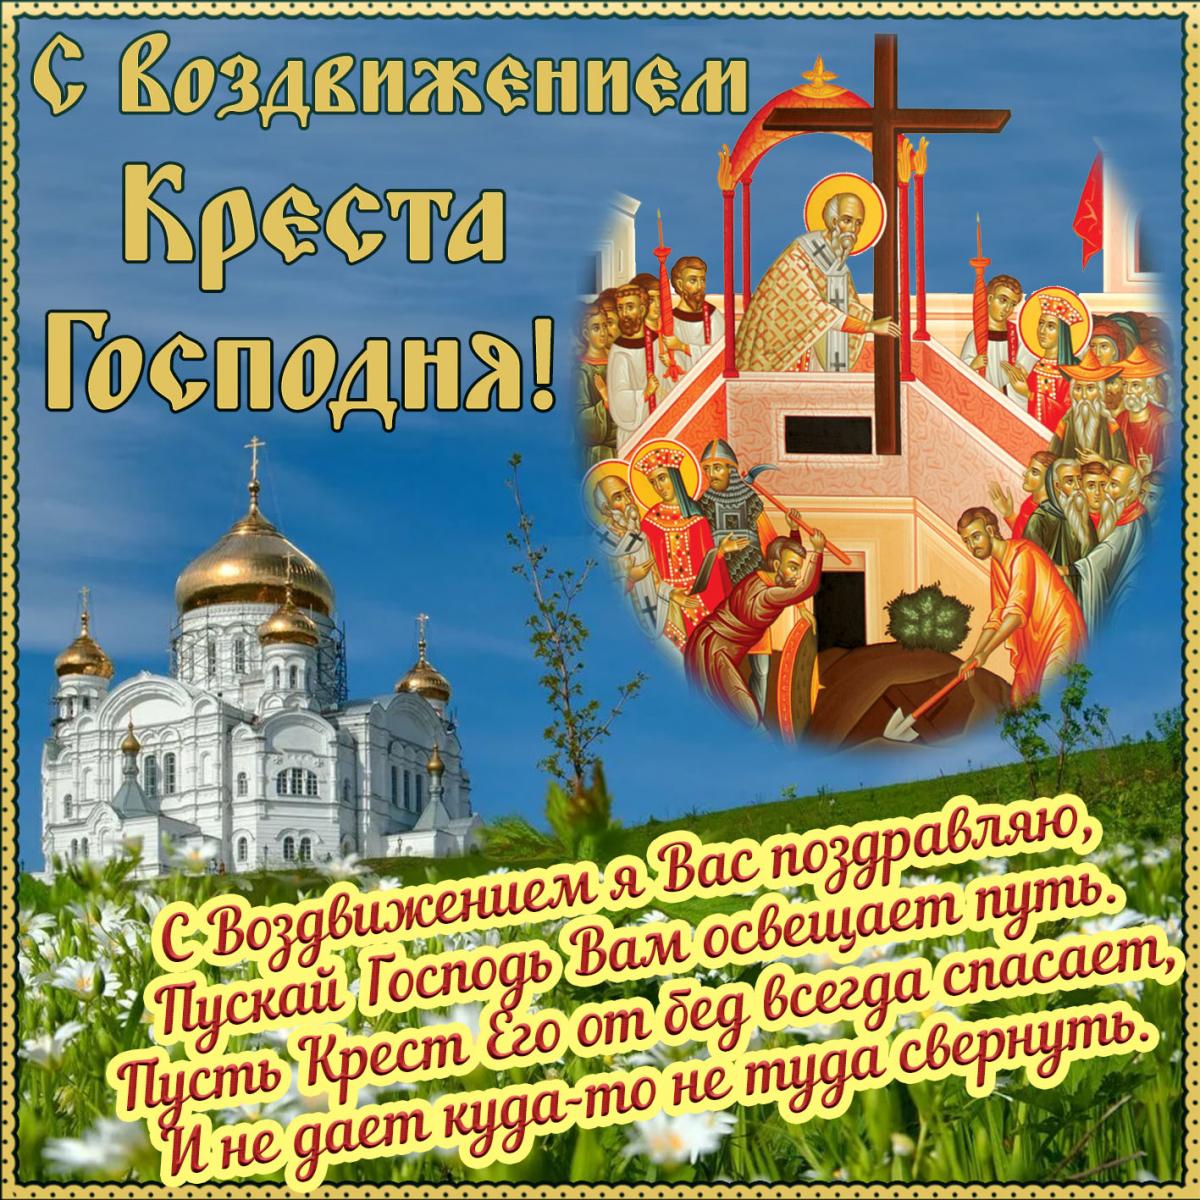 Воздвижение Креста Господня: поздравления, картинки, открытки